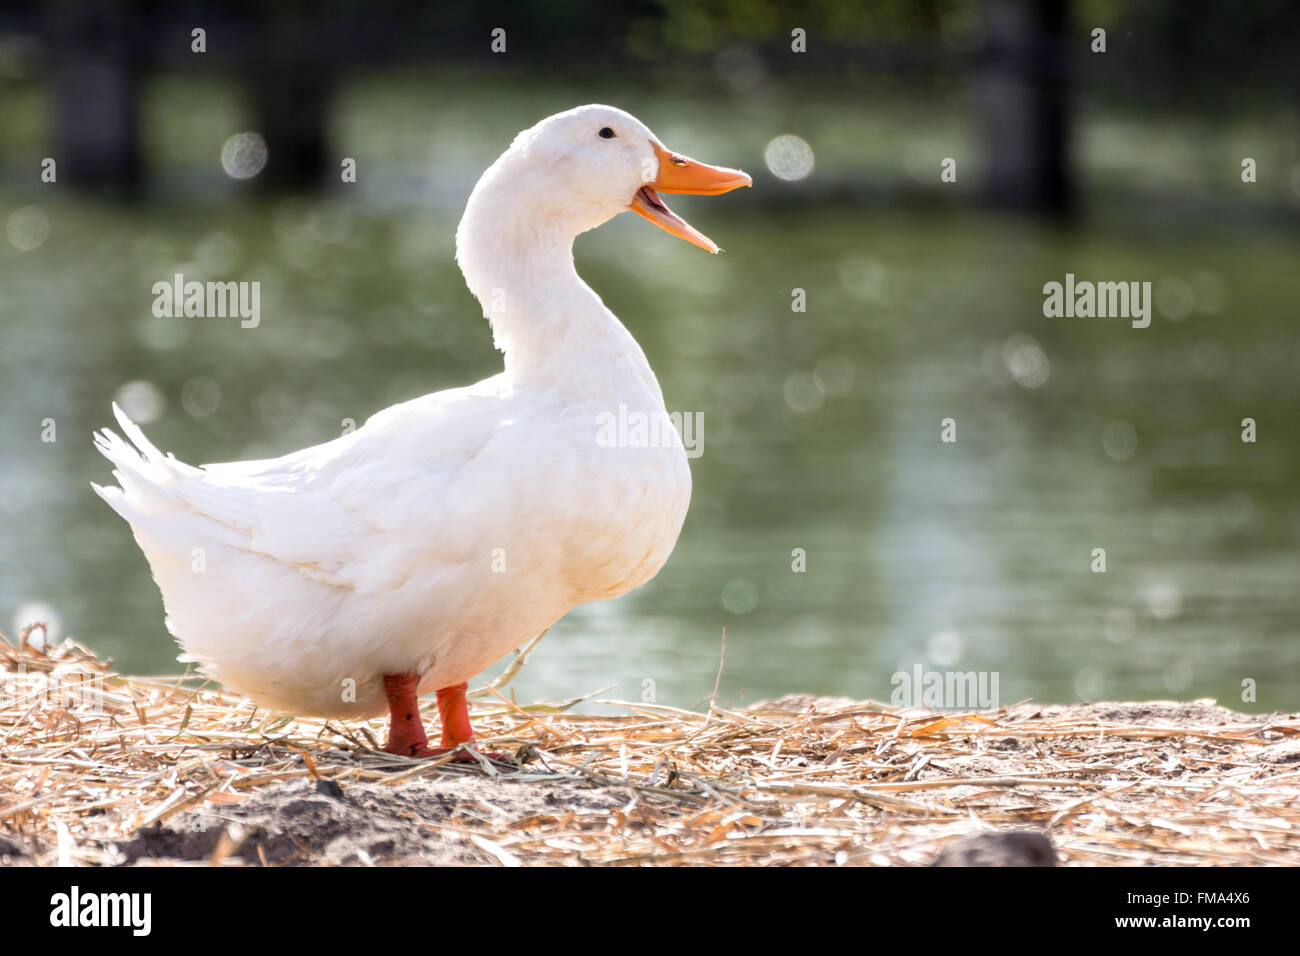 Weiße Ente stehen neben einem Teich oder See mit bokeh Hintergrund, das Leben der Tiere und Landwirtschaft Konzept Bild. Stockfoto